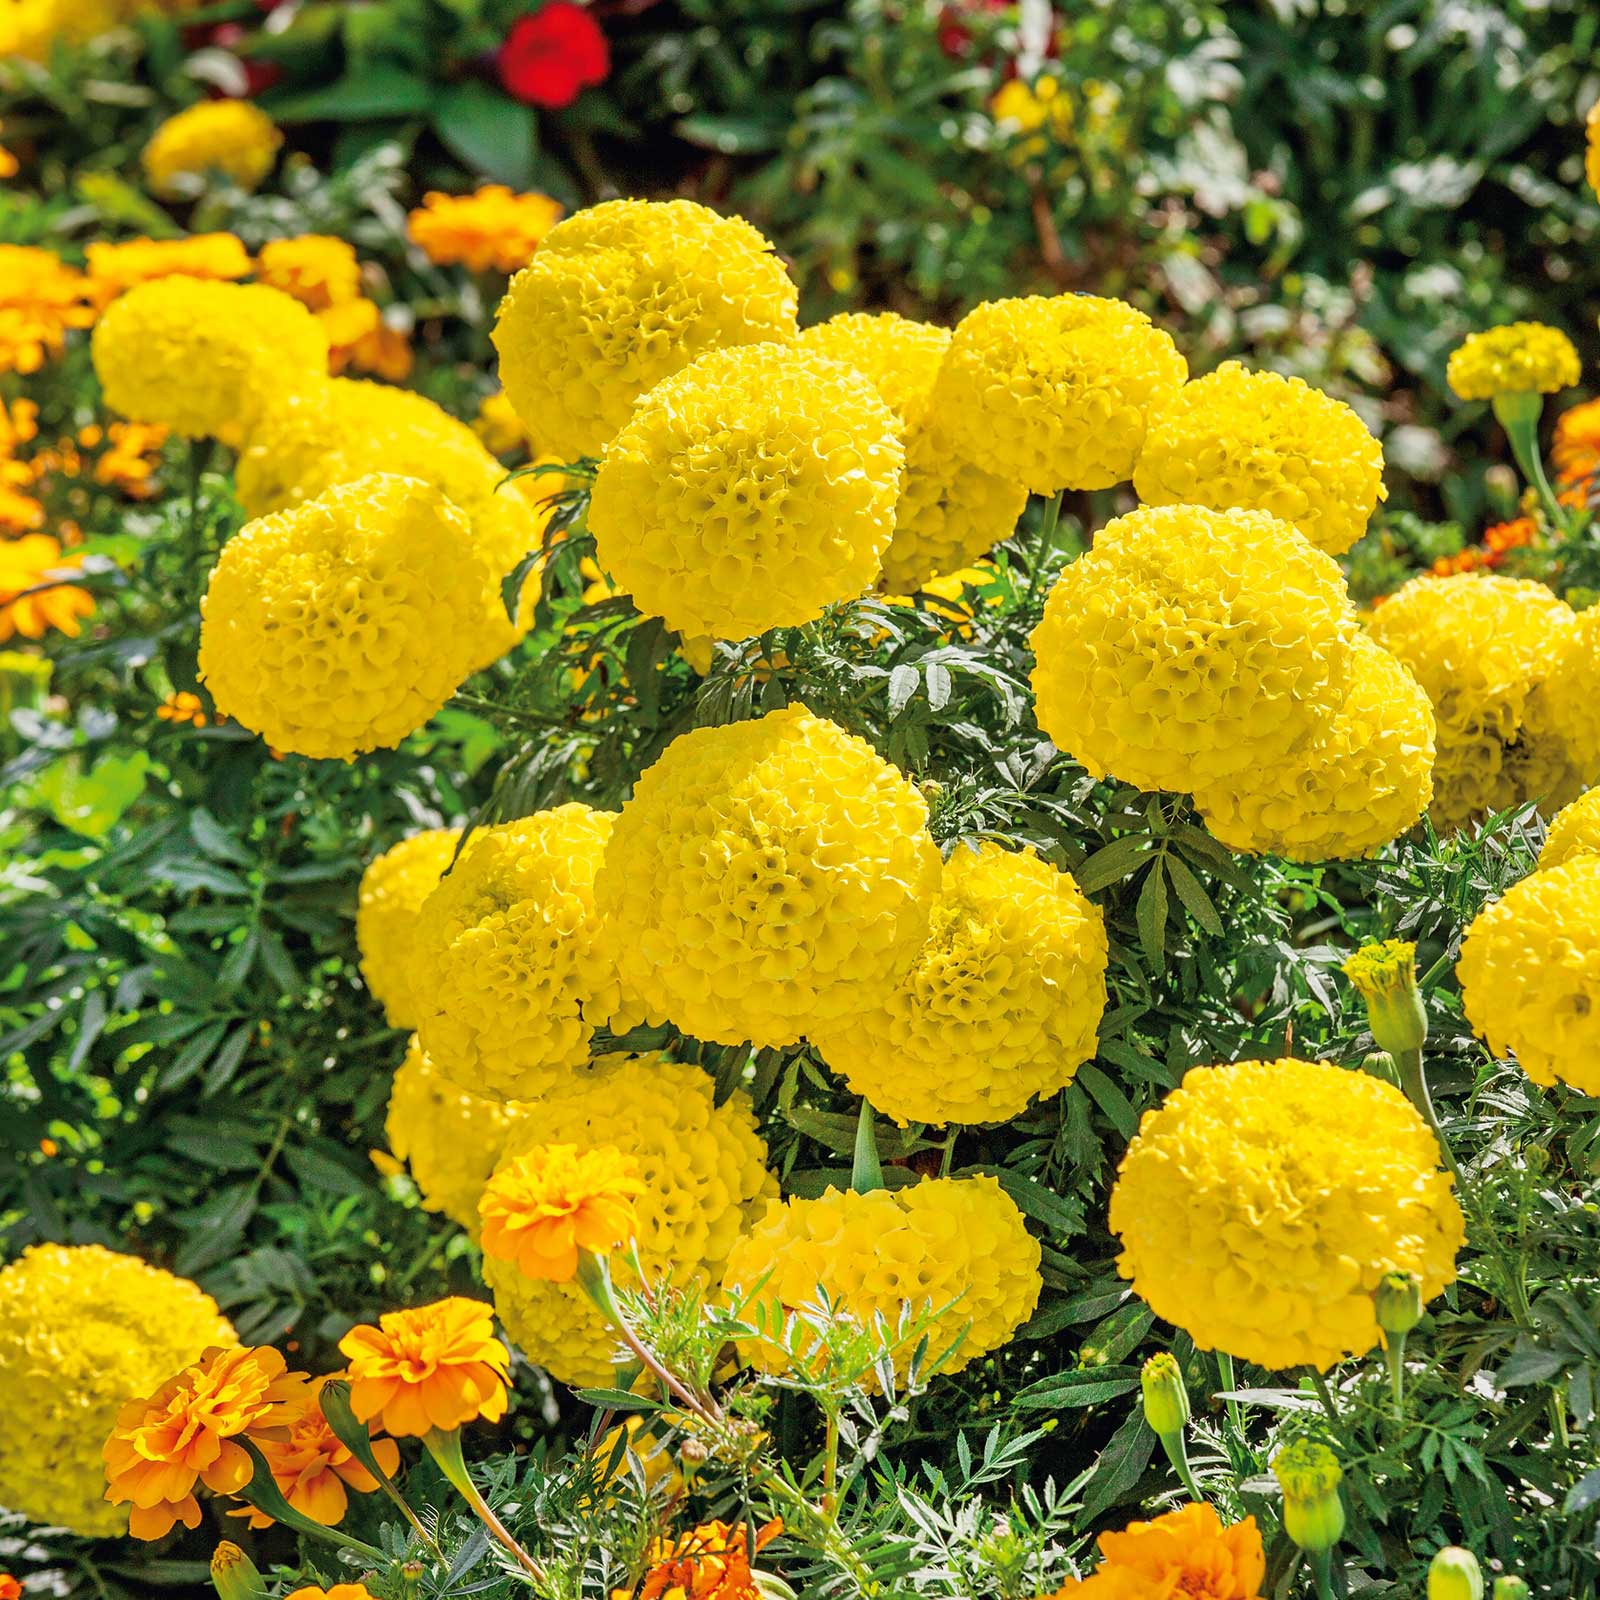 marigold flower images